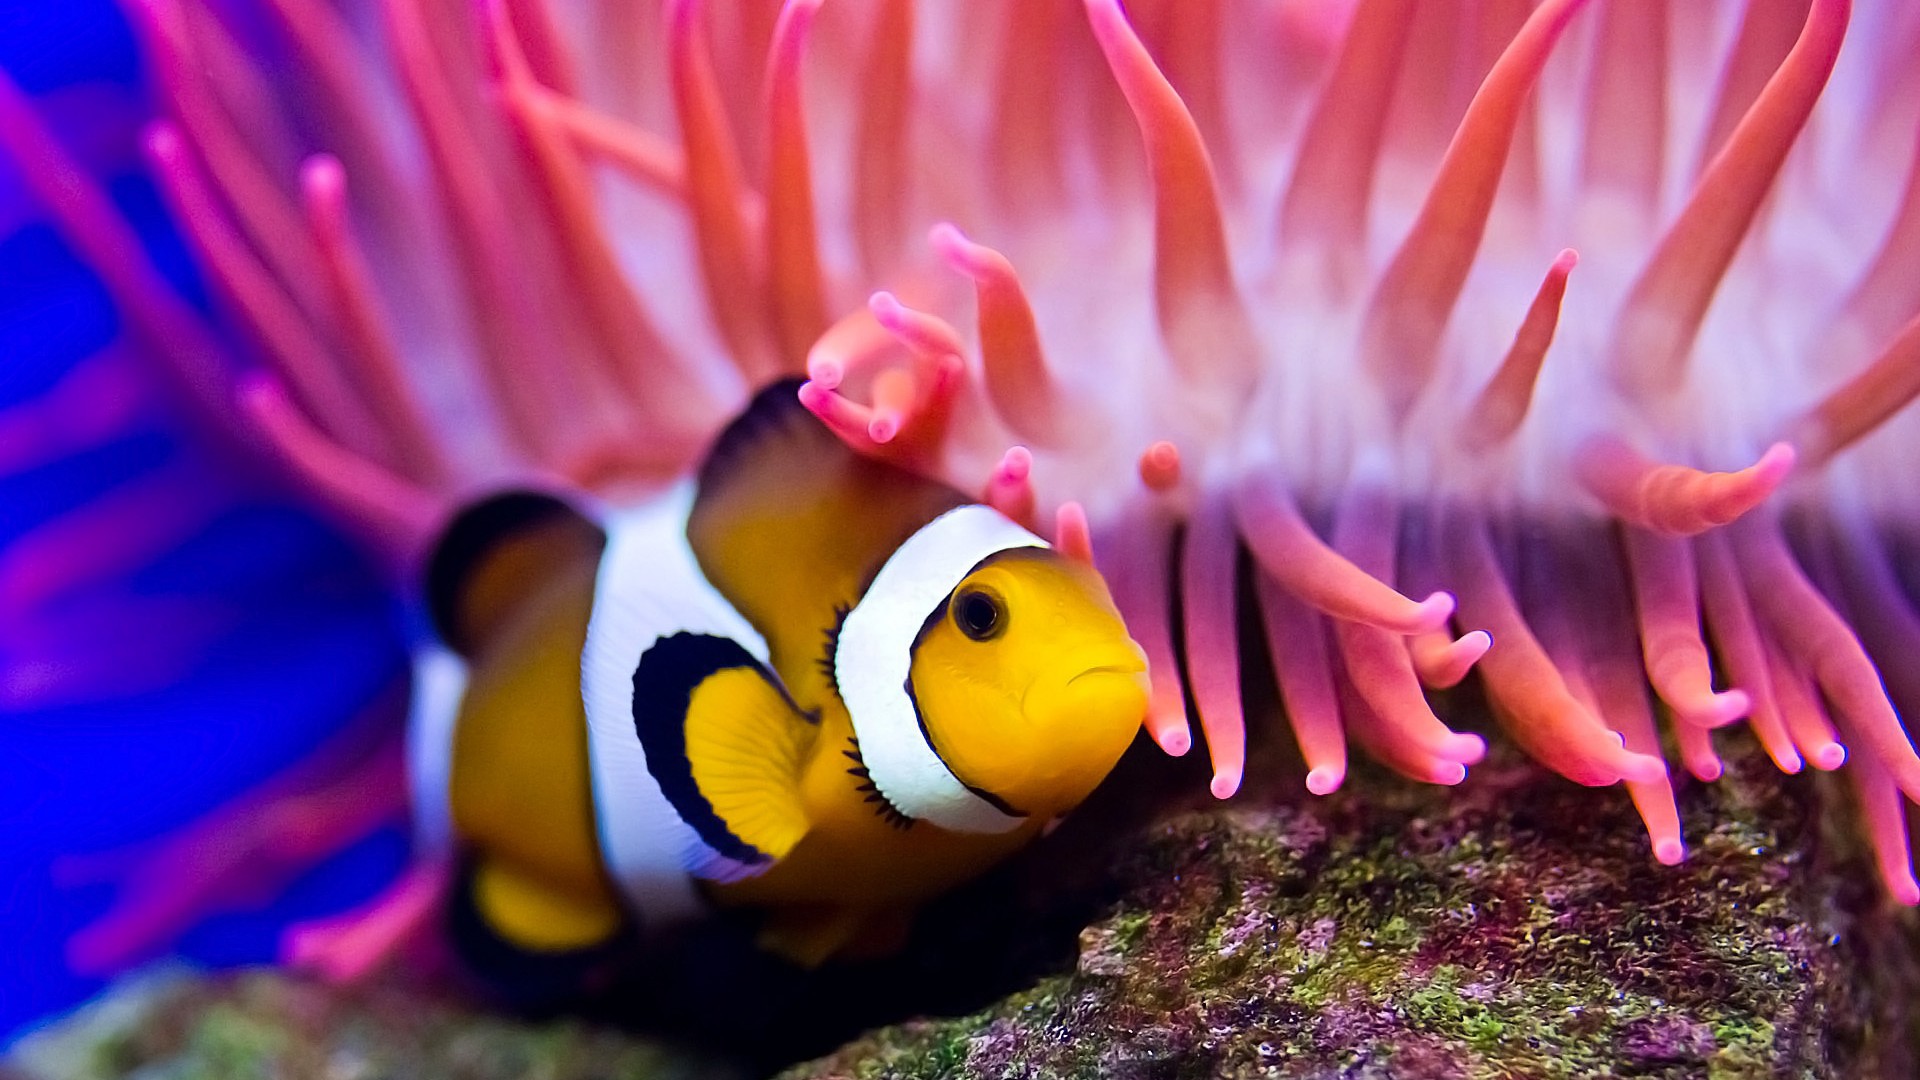 Рыба-клоун, дайвинг, Красное море, кораллы, лучшее в мире место для дайвинга, Clownfish, diving, Red sea, coral, World's best diving sites, deep sea creatures (horizontal)